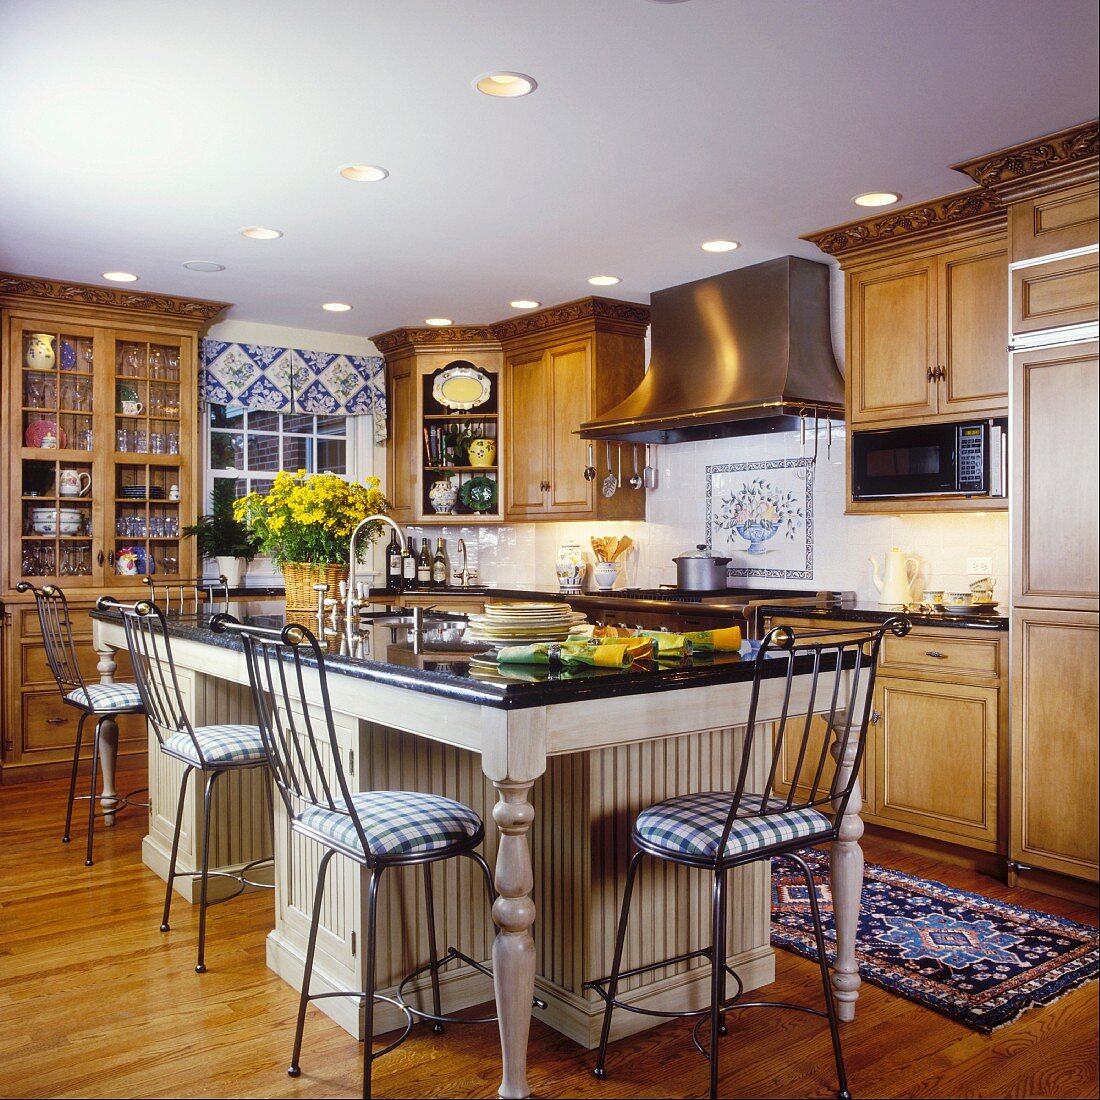 Traditionelle Küche mit Küchenblock im Esstischlook und hohe Stühle als Barhocker für die Küchentheke